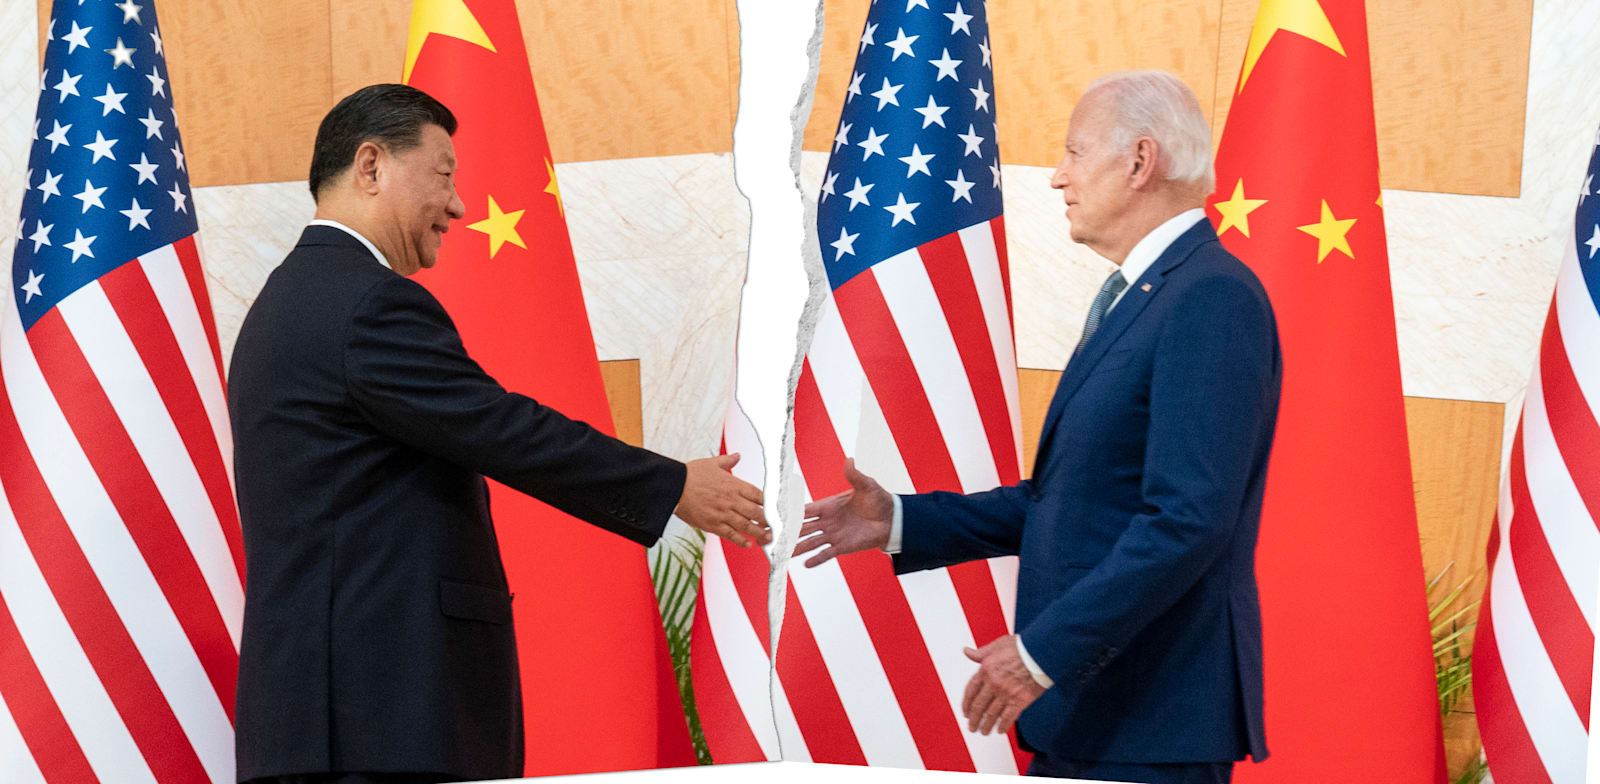 איבה גוברת בין המדינות. נשיא ארה''ב ג'ו ביידן לוחץ את ידו של נשיא סין שי ג'ינגפינג / צילום: Associated Press, Alex Brandon